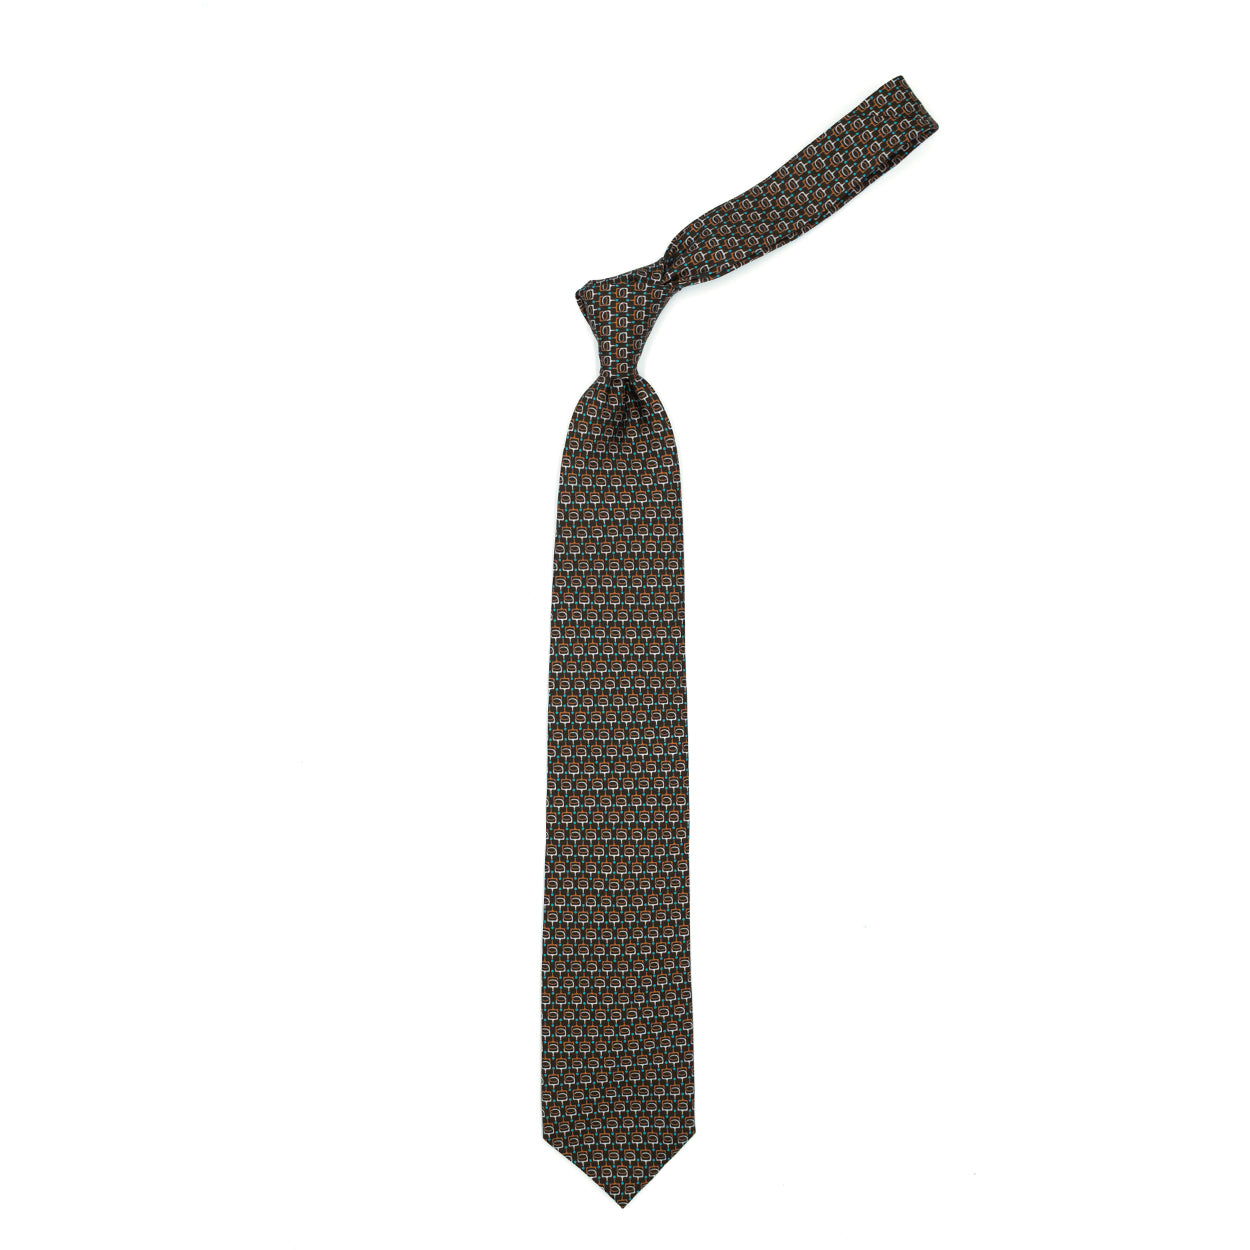 Cravatta marrone con pattern astratto